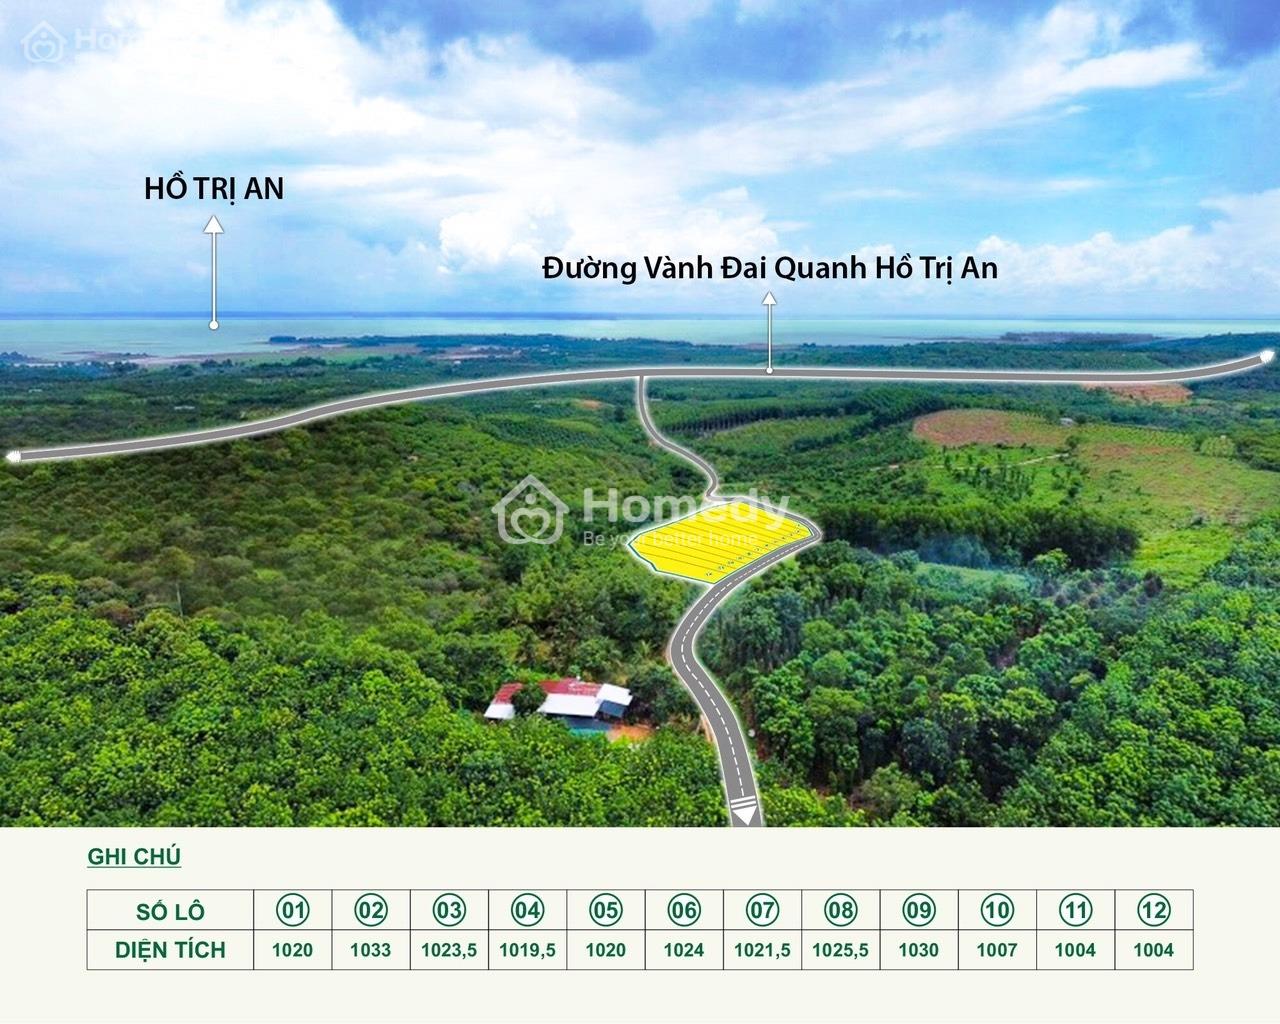 Cần bán 1000m2 đất Định Quán ngay QL 20, view hồ Trị An Đồng Nai giá chỉ 1,1 triệu / m2 có sổ riêng - Ảnh 2